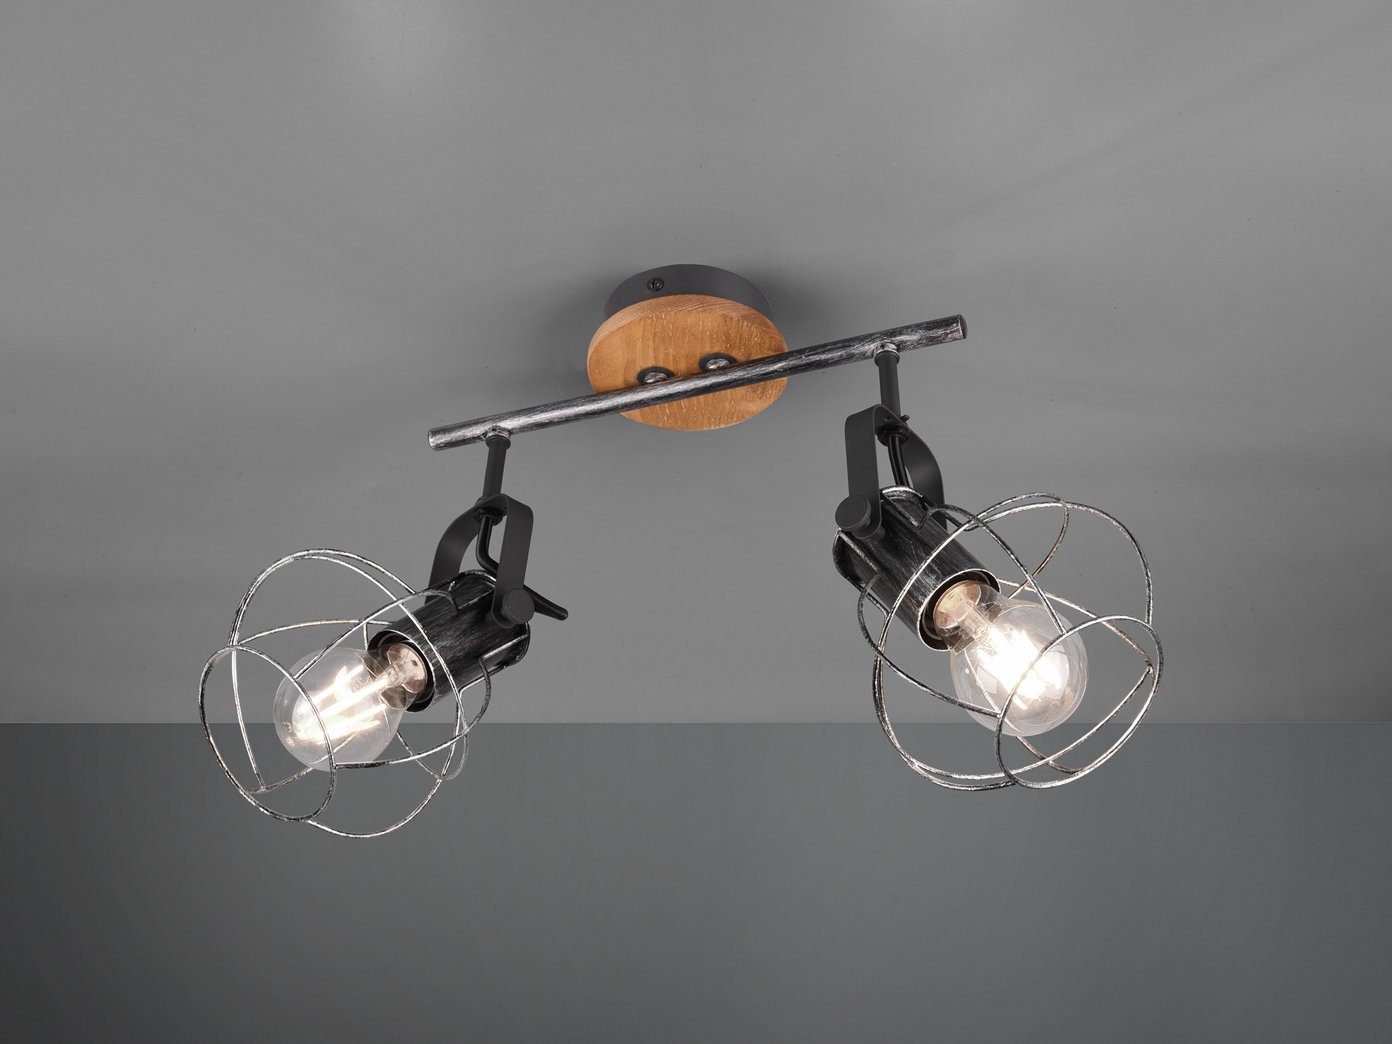 meineWunschleuchte LED Deckenstrahler, Holz-Baldachin mit Lampen-Schirme  Draht, Coole Gitter-Lampe Industrial 2 flammig für Treppenhaus,  Flur-Beleuchtung online kaufen | OTTO